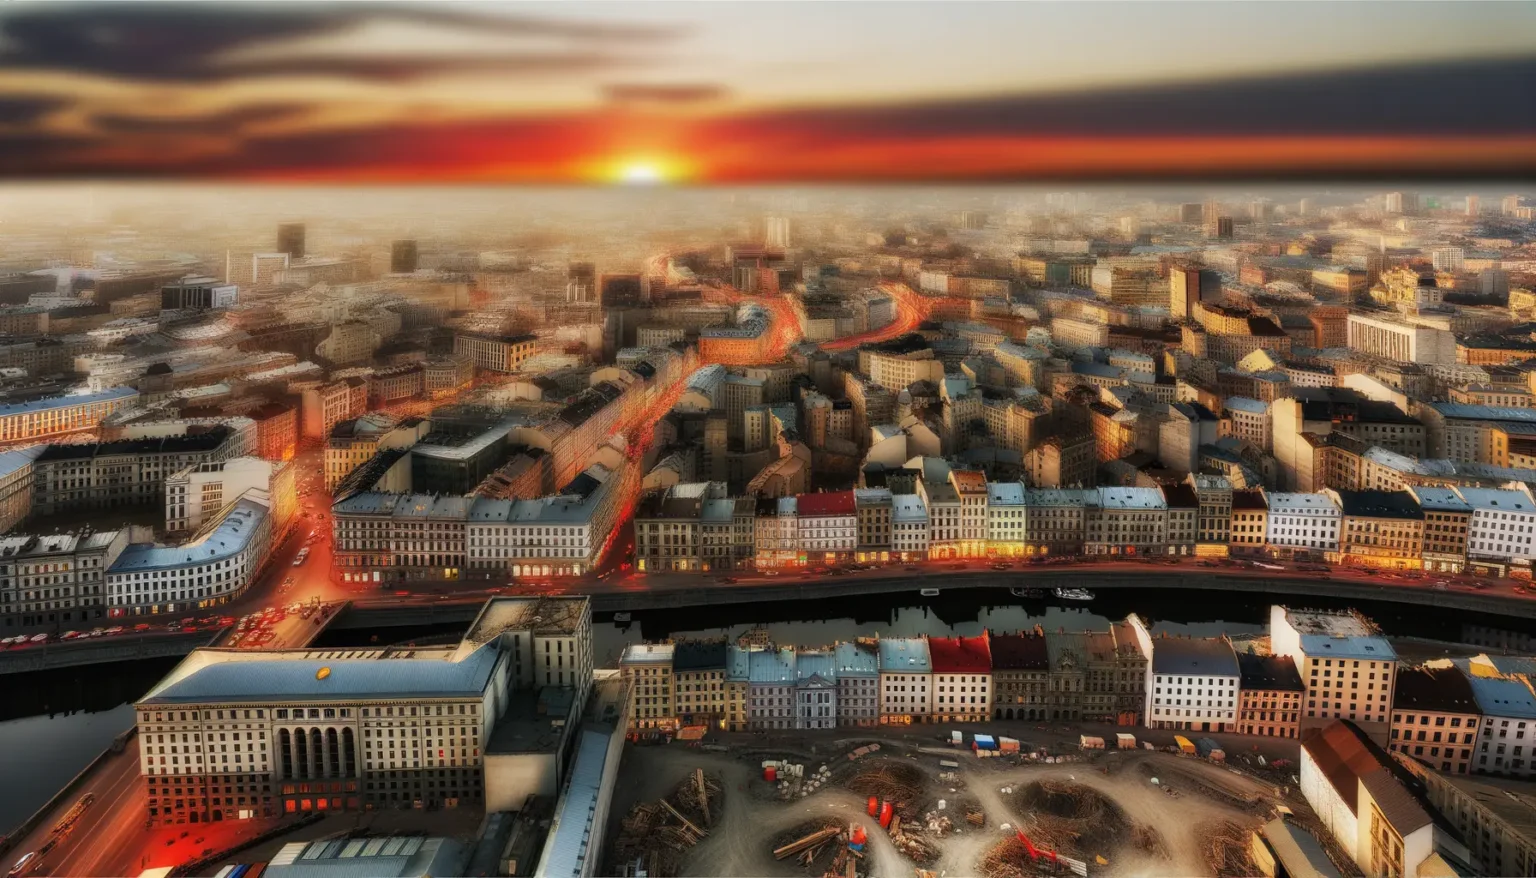 Luftaufnahme einer belebten Großstadt bei Sonnenuntergang, mit sichtbaren Fahrzeuglichtern, die durch die Straßen streifen und ein glühendes Muster bilden, vor dem Hintergrund eines pastellfarbenen Himmels.